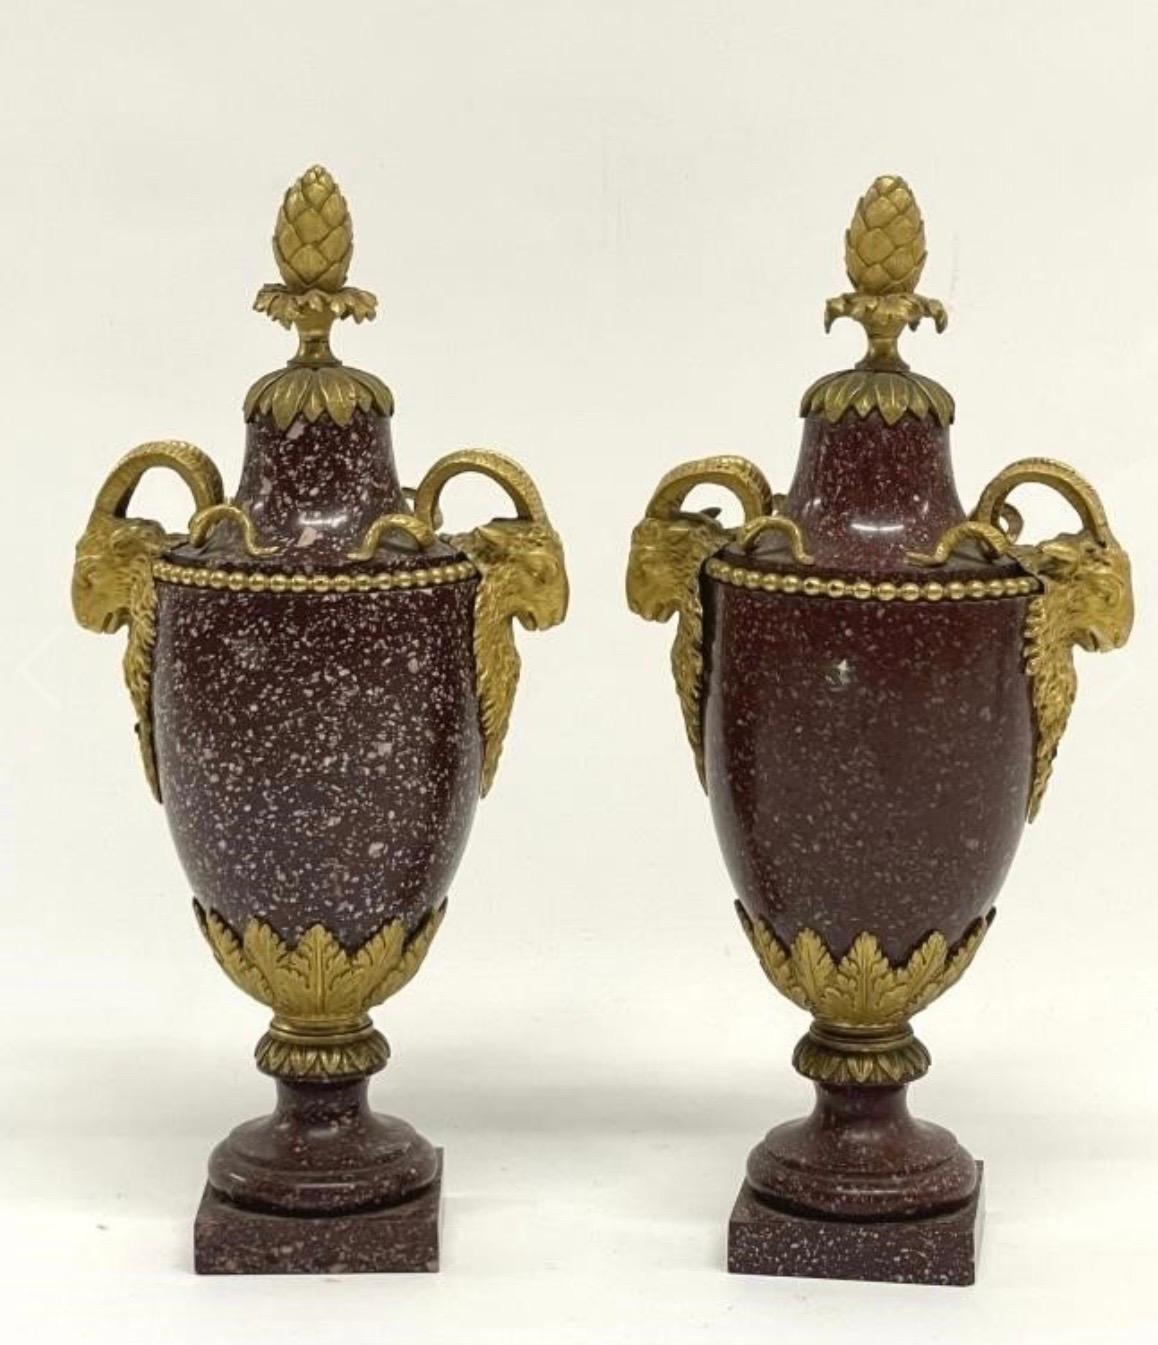 Die Passepartouts sind denen von Gouthière ähnlich. Die eine Vase weist mehr weiße Sprenkel im Porphyr auf als die andere.